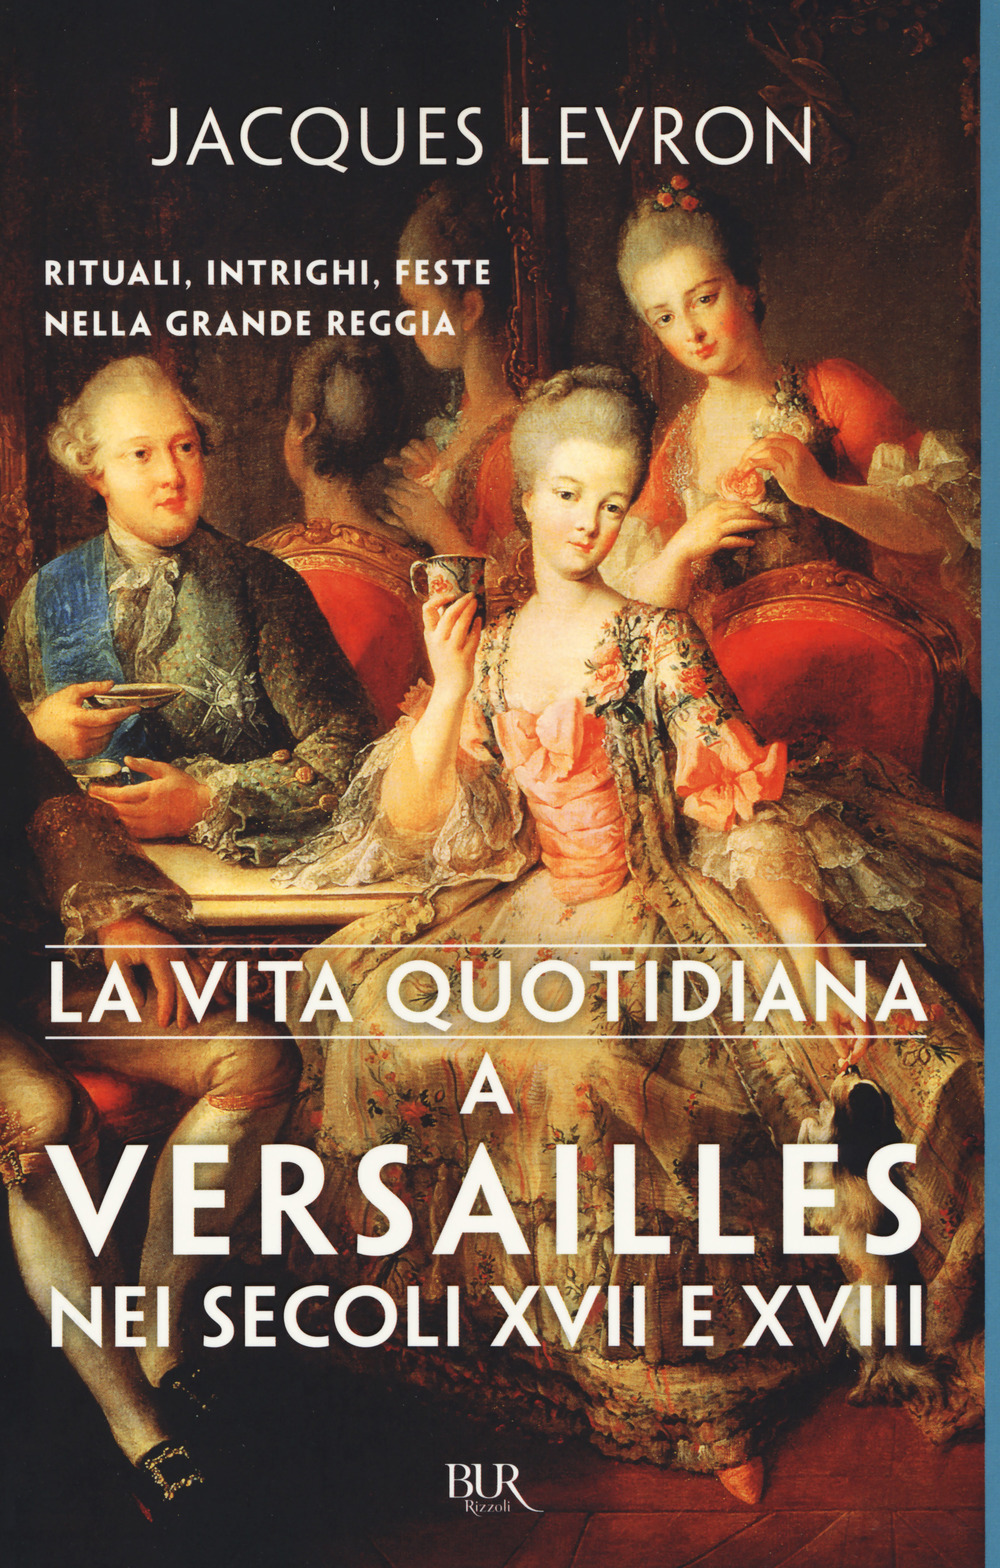 La vita quotidiana a Versailles nei secoli XVII e XVIII